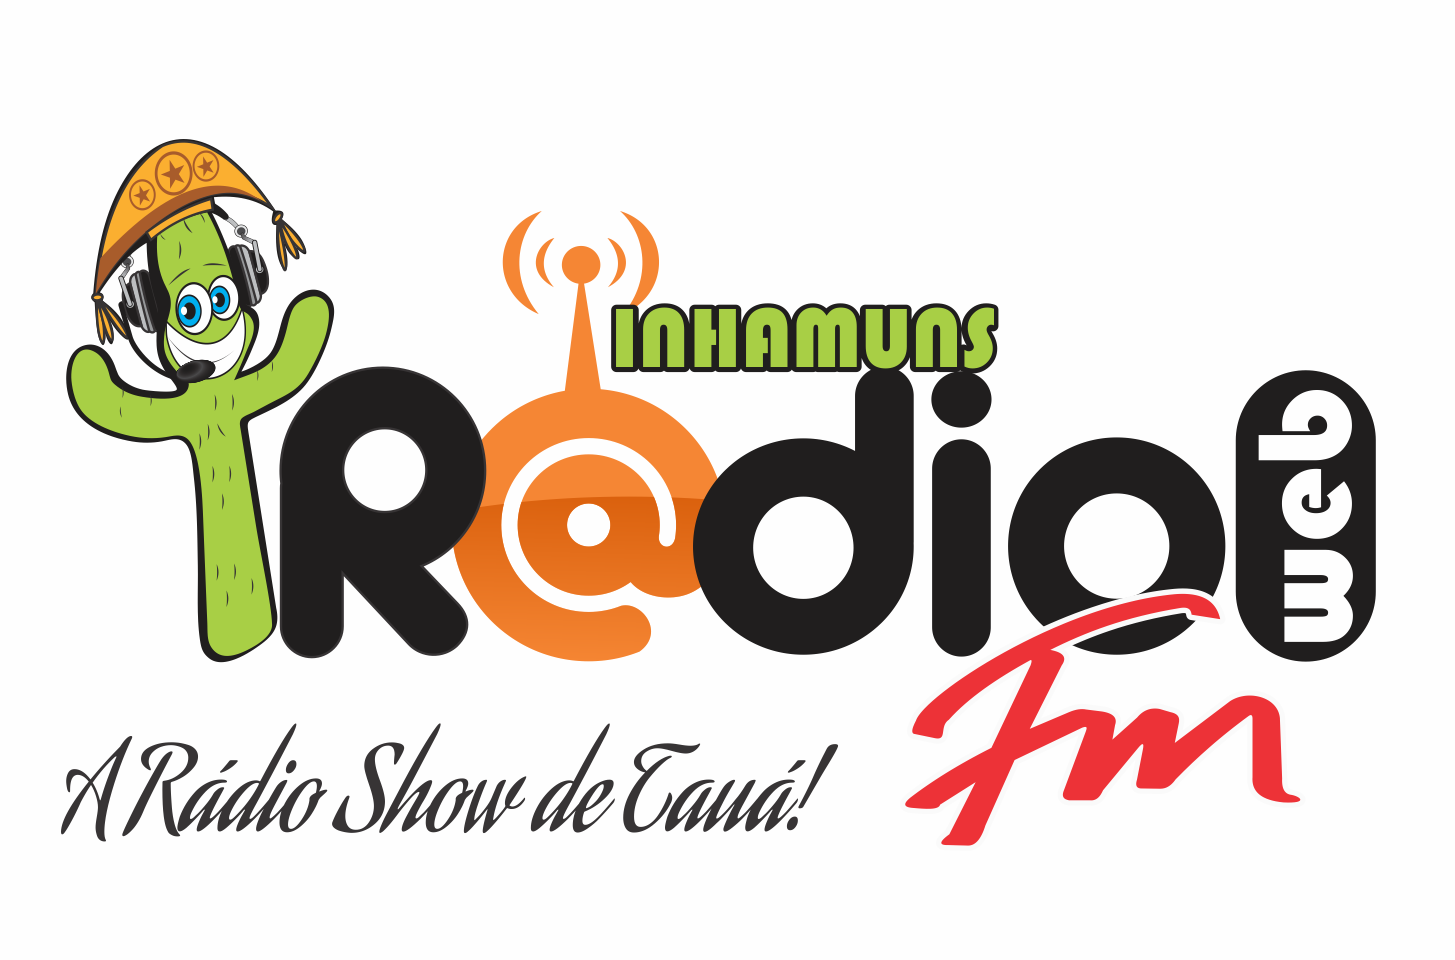 Inhamuns Rádio Web FM - Tauá.